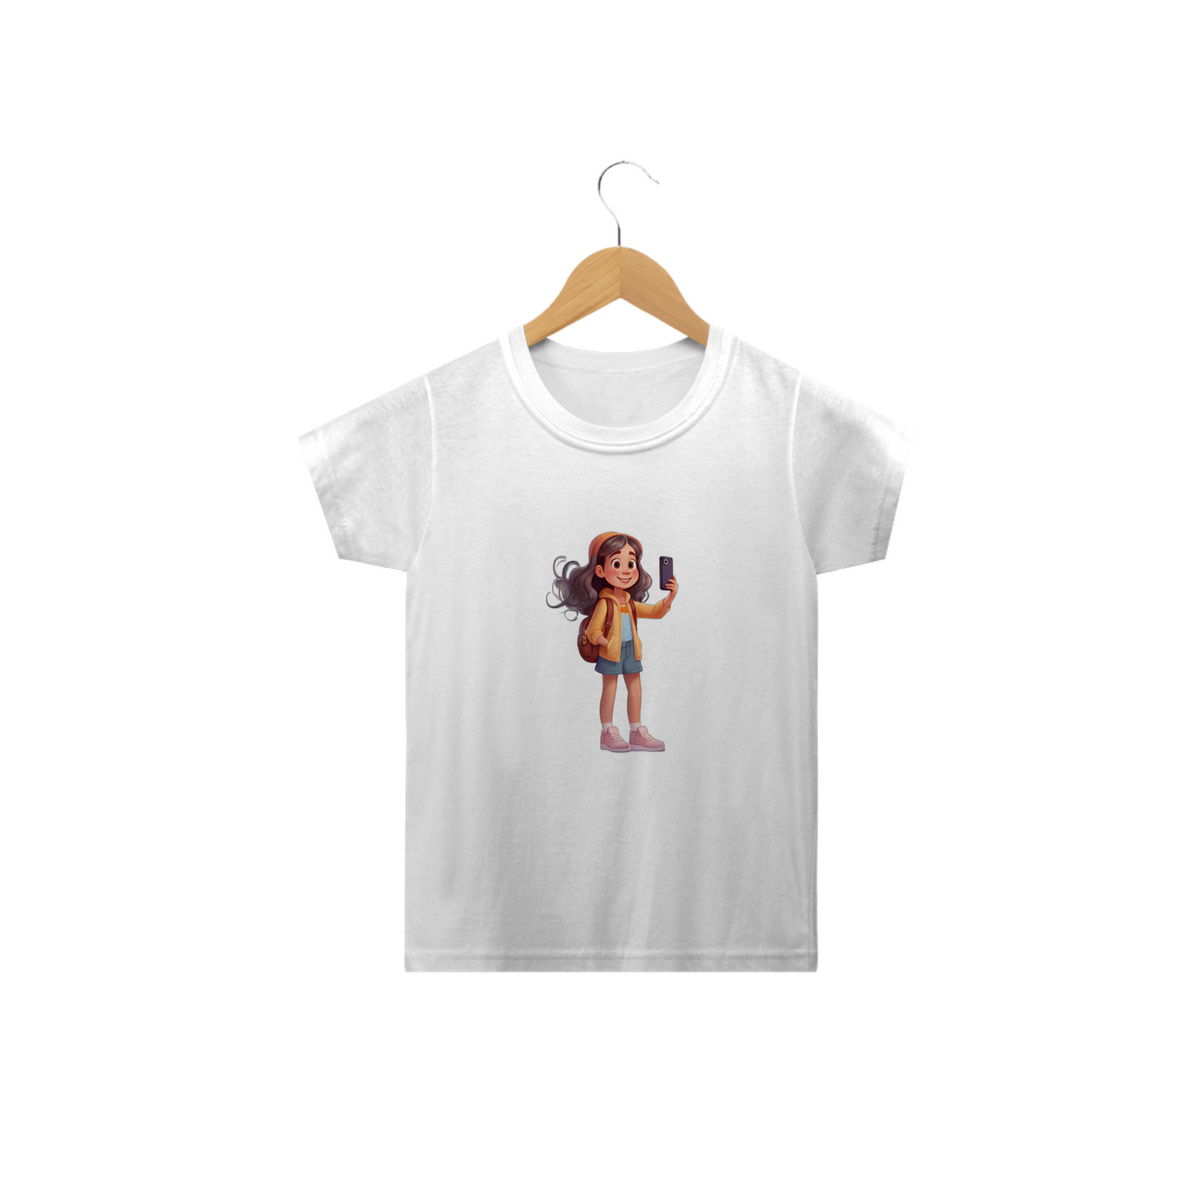 Nome do produto: Camiseta infantil A INFLUENCER 2